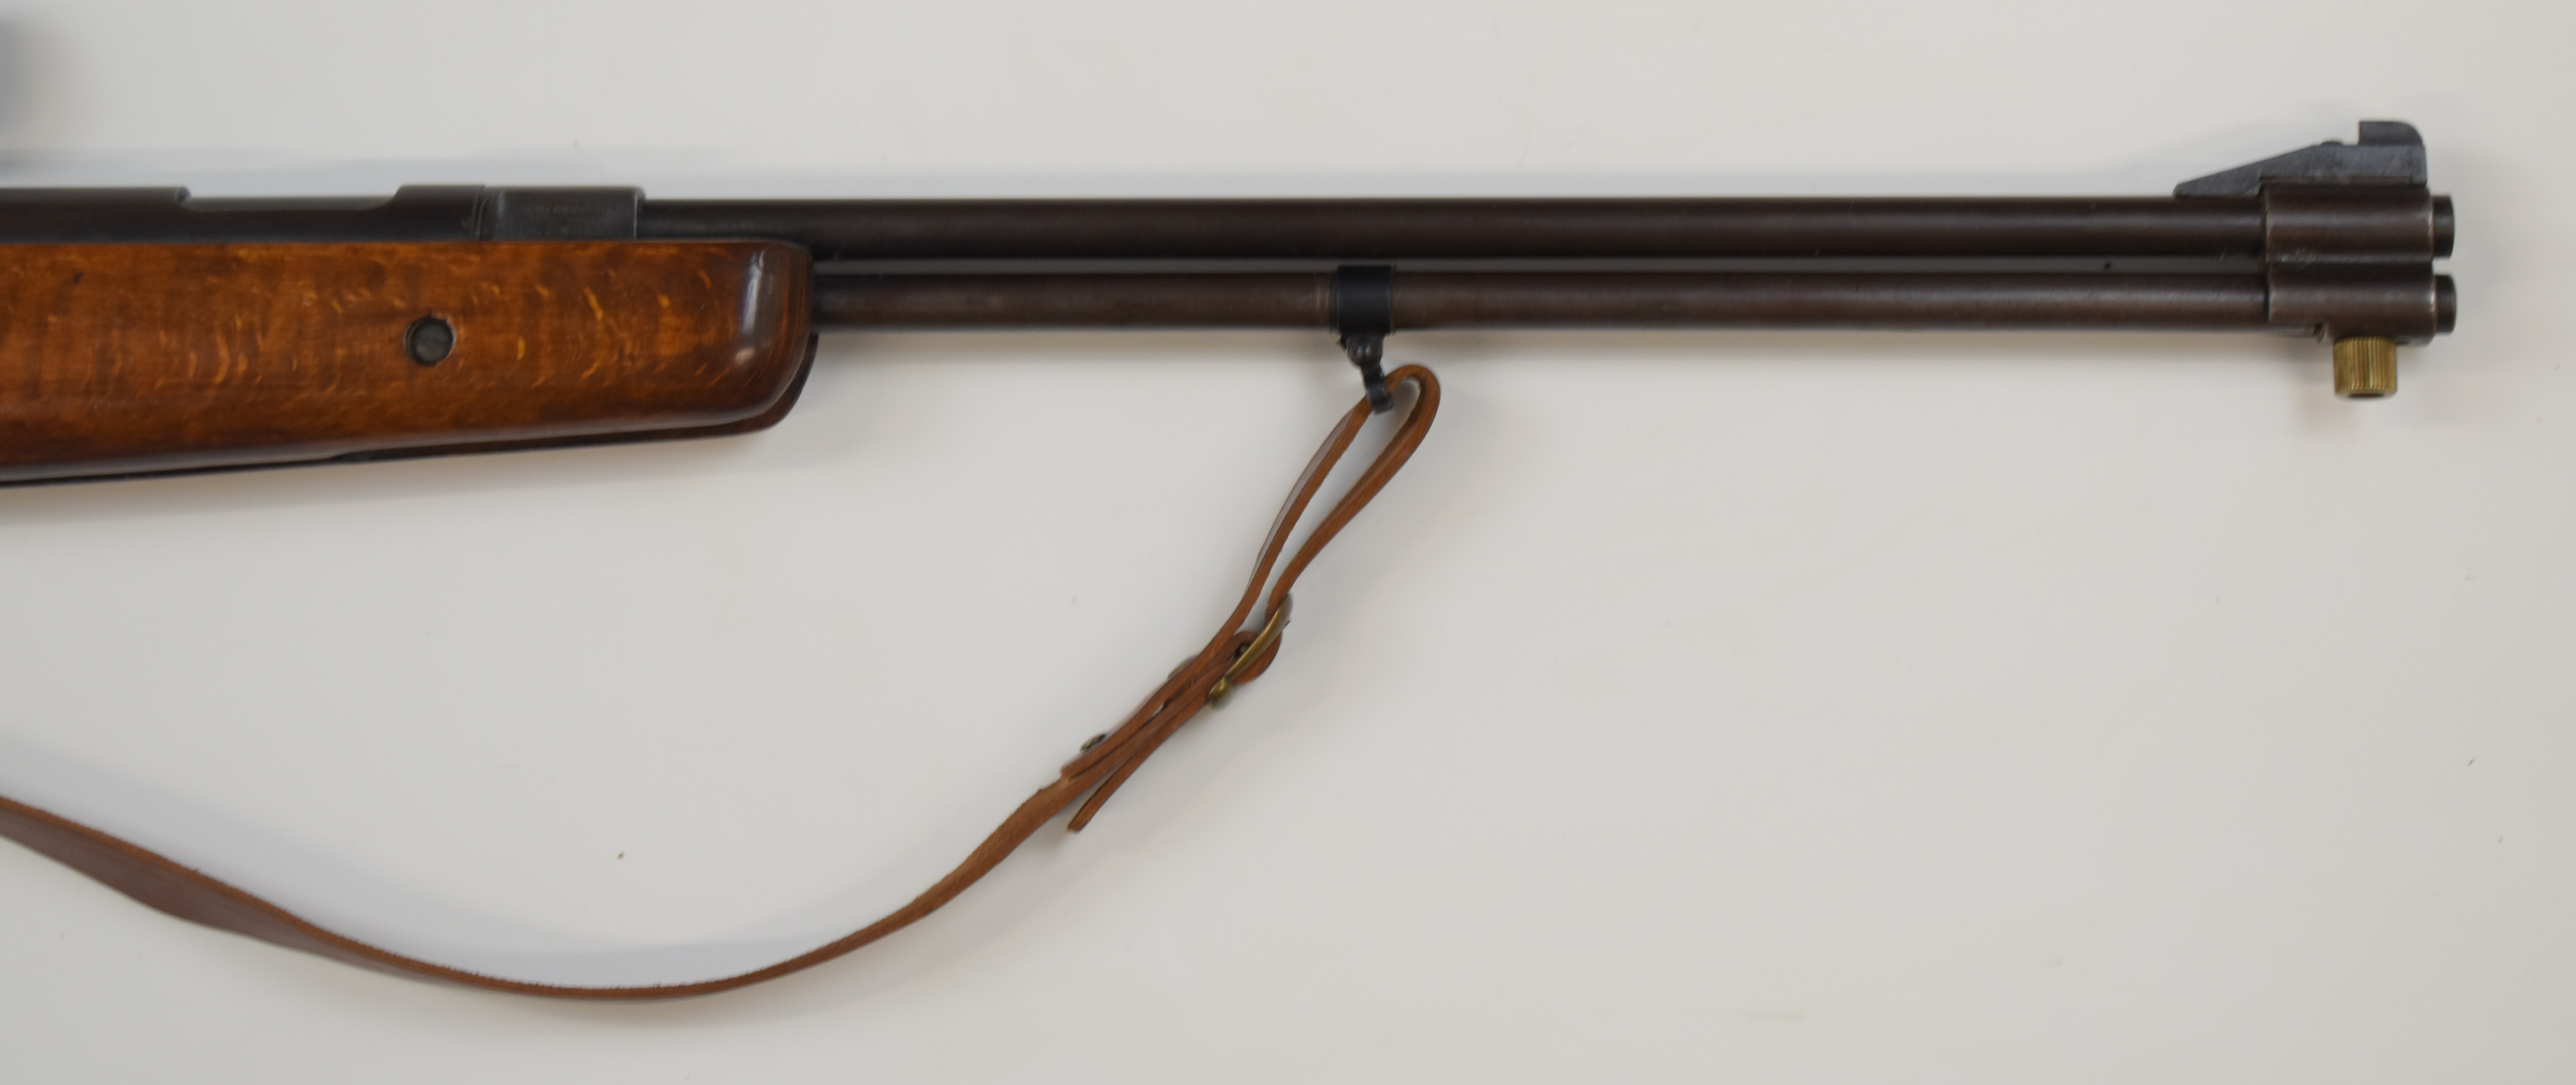 Weirauch HW77 .22 underlever air rifle with chequered semi-pistol grip, raised cheek piece, - Image 5 of 9